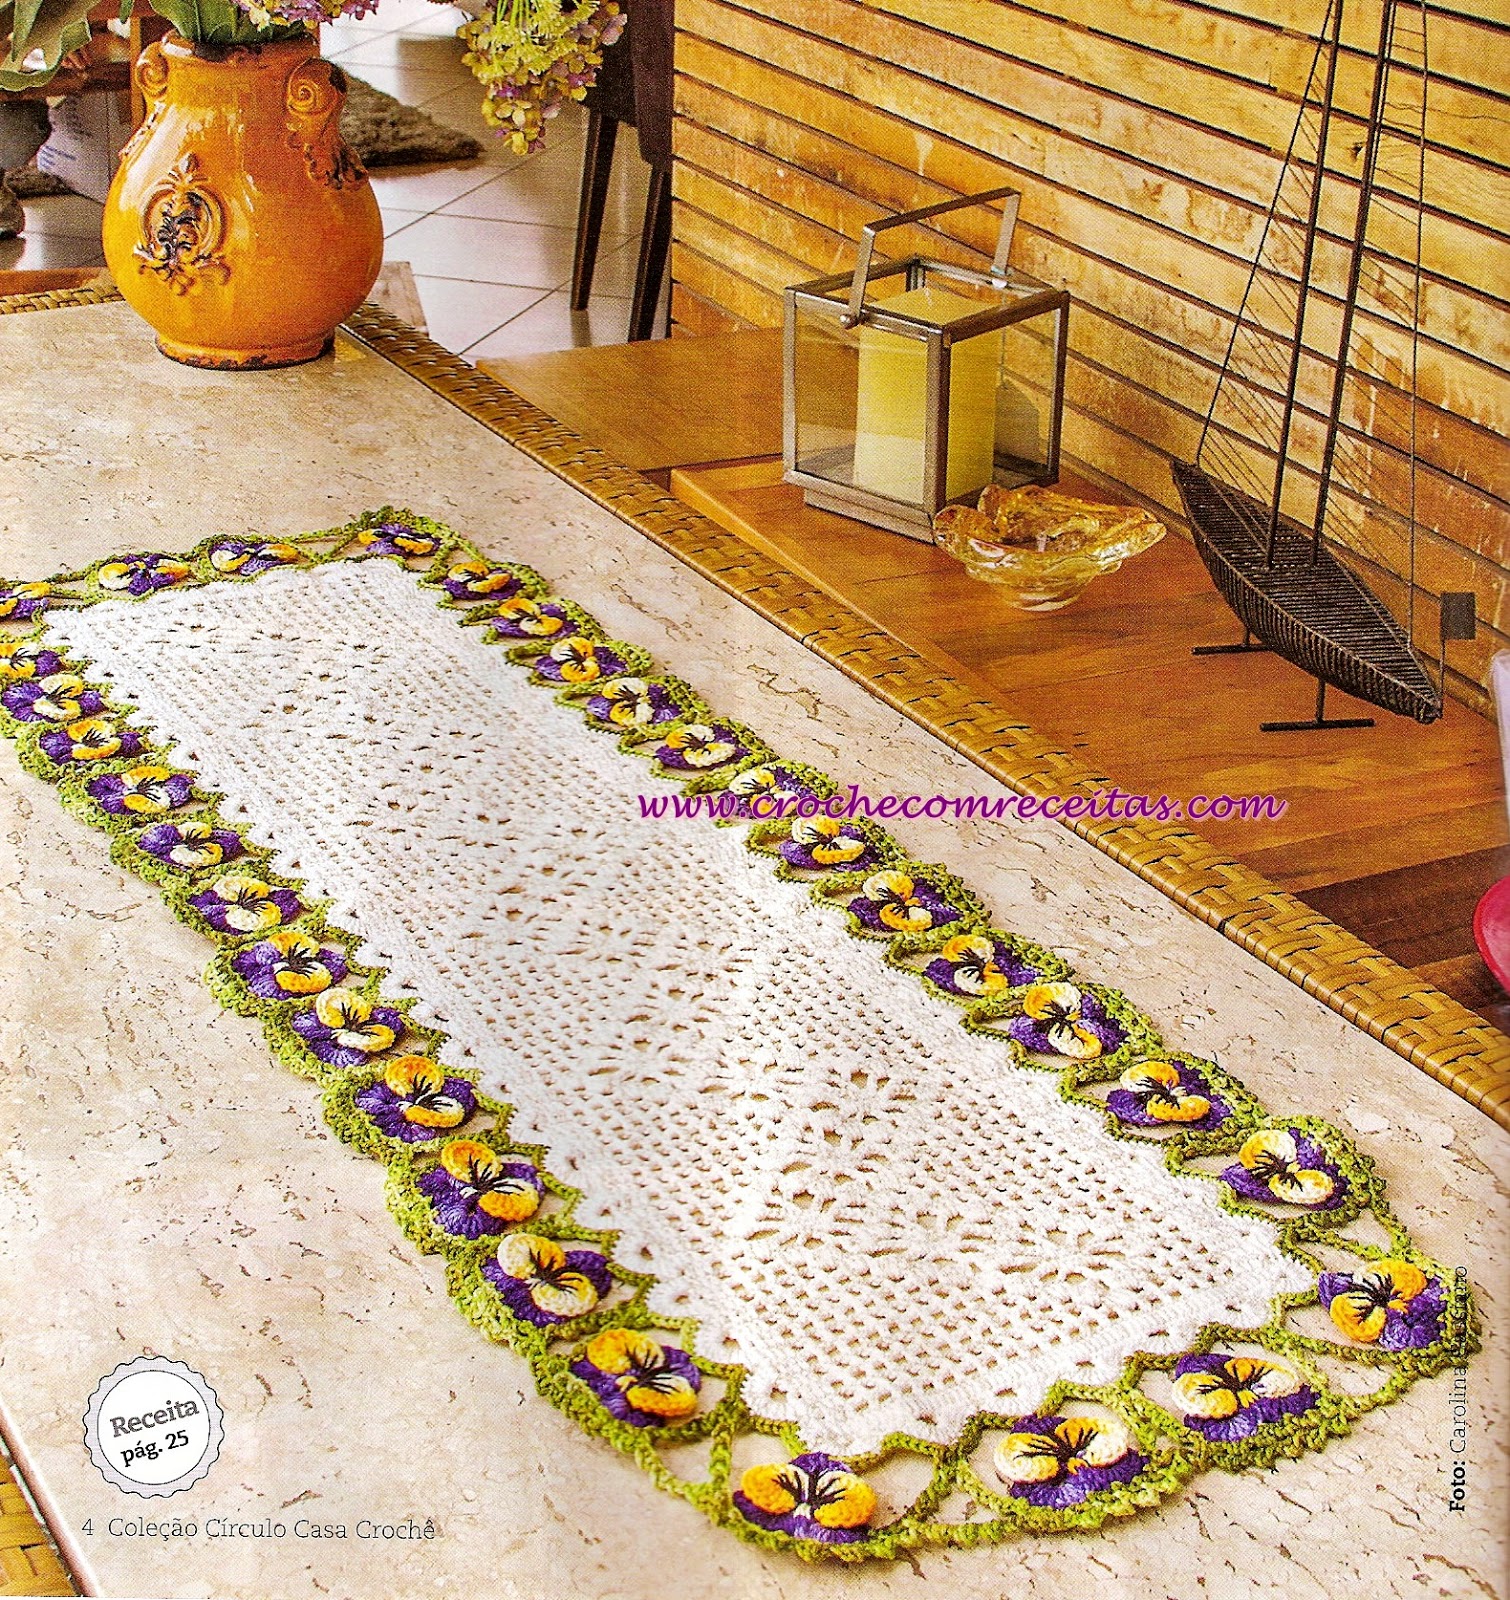 Caminho de mesa em crochê com flores amor-perfeito | Receita rápida e  simples de fazer